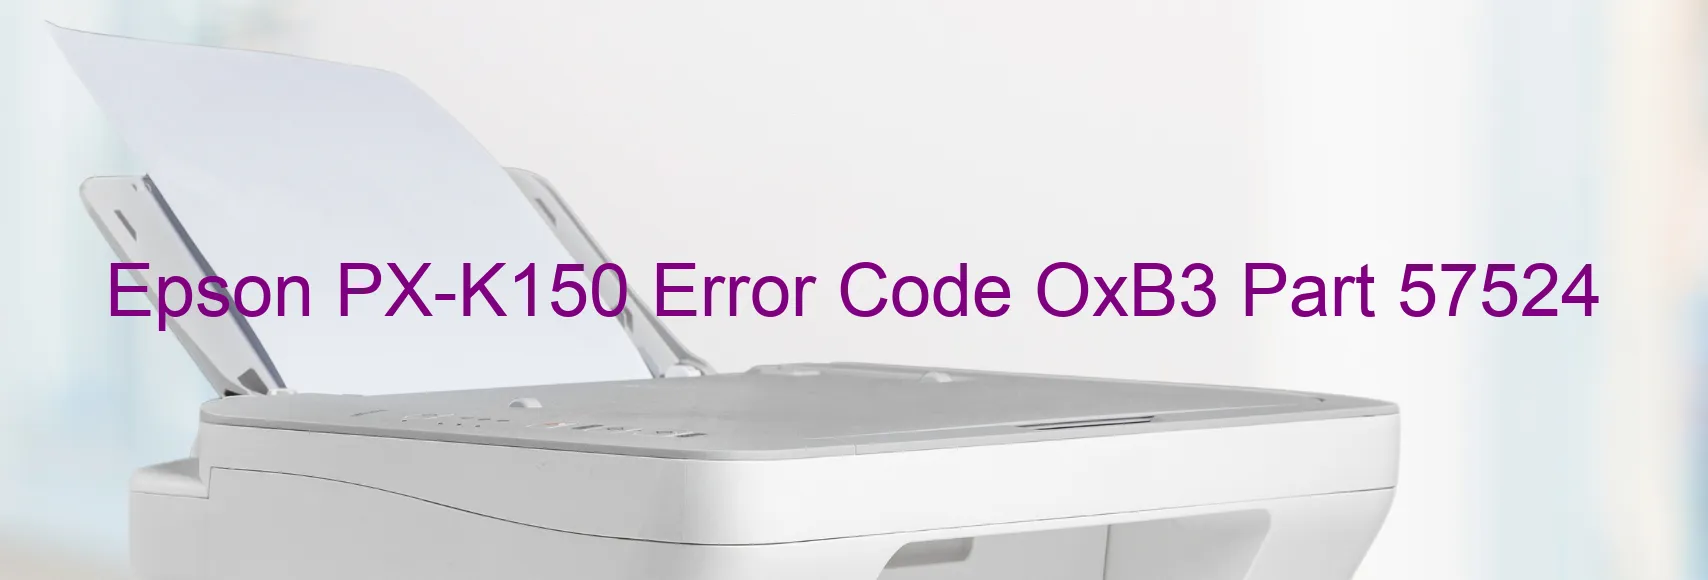 Epson PX-K150 Error OxB3